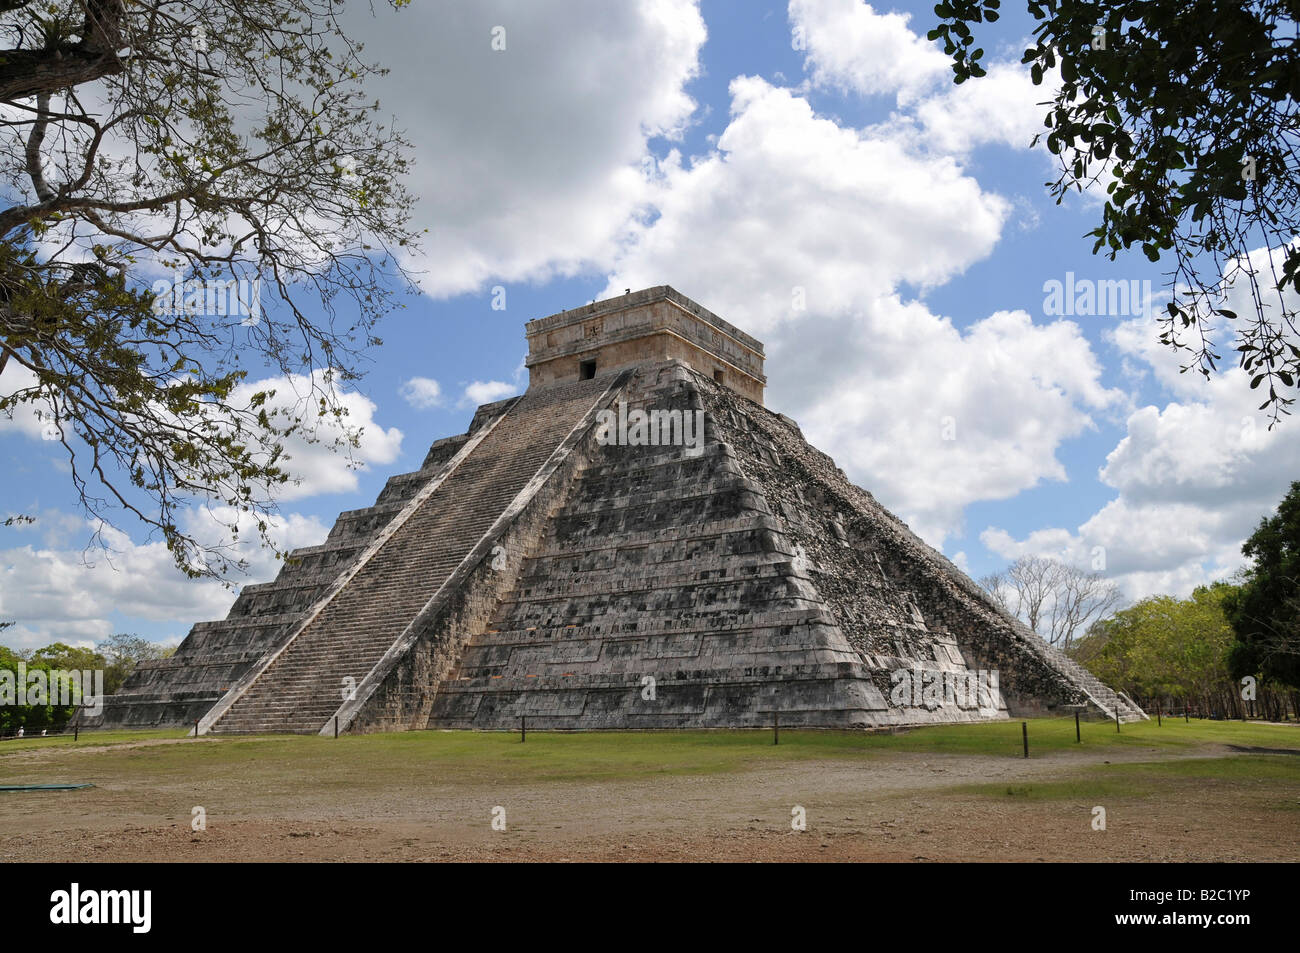 Templo de la pirámide Kukulkan, zona nord, CHICHEN-ITZA, nueva maravilla del mundo, las excavaciones arqueológicas mayas y toltecas Foto de stock